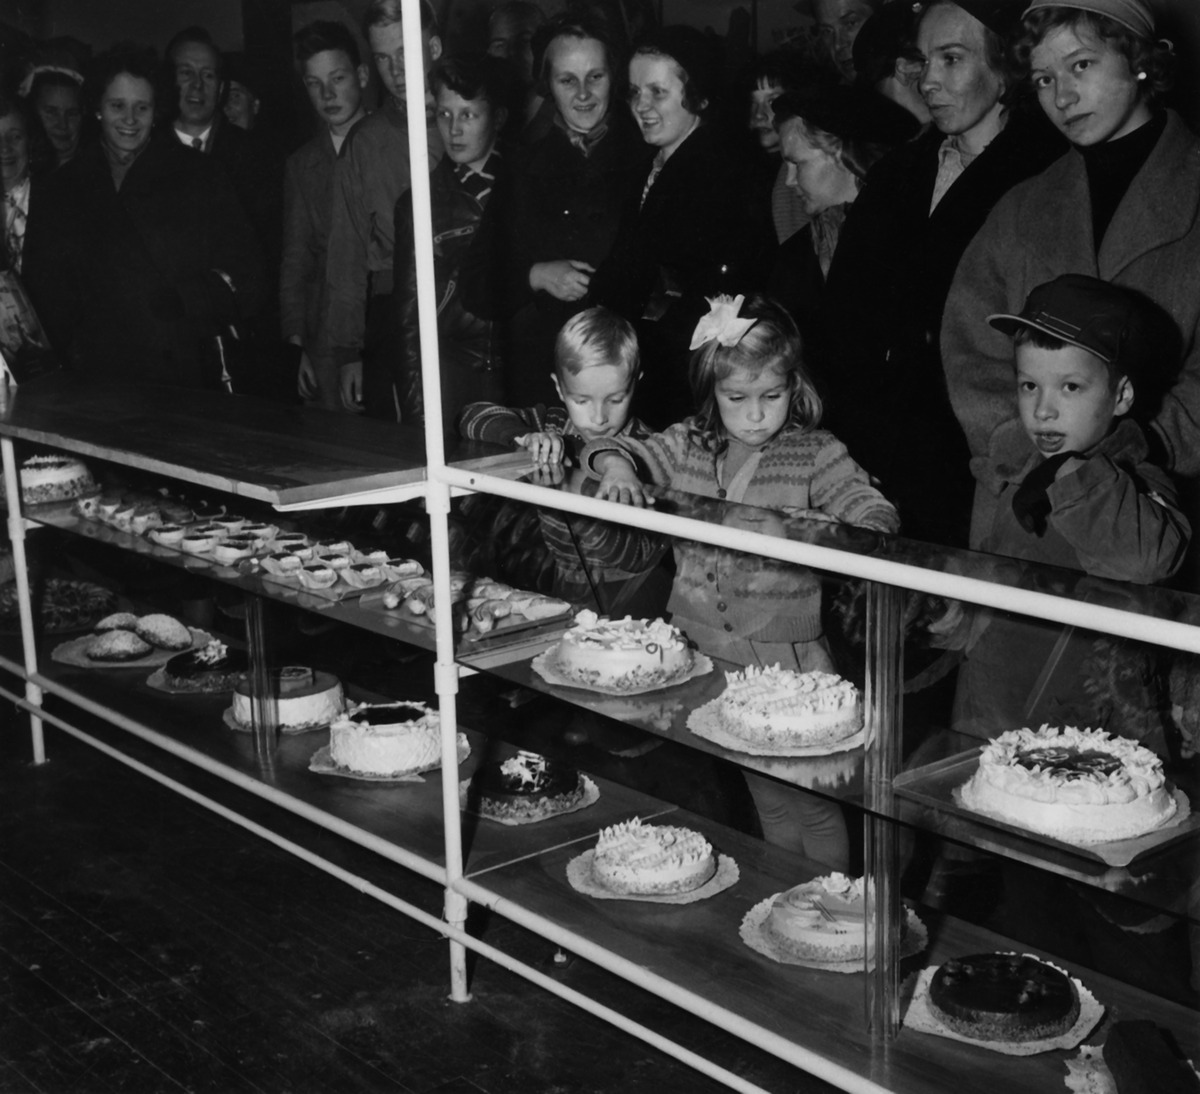 Ihmisiä katselemassa Elannon leipätehtaan kakkuja ja leivoksia